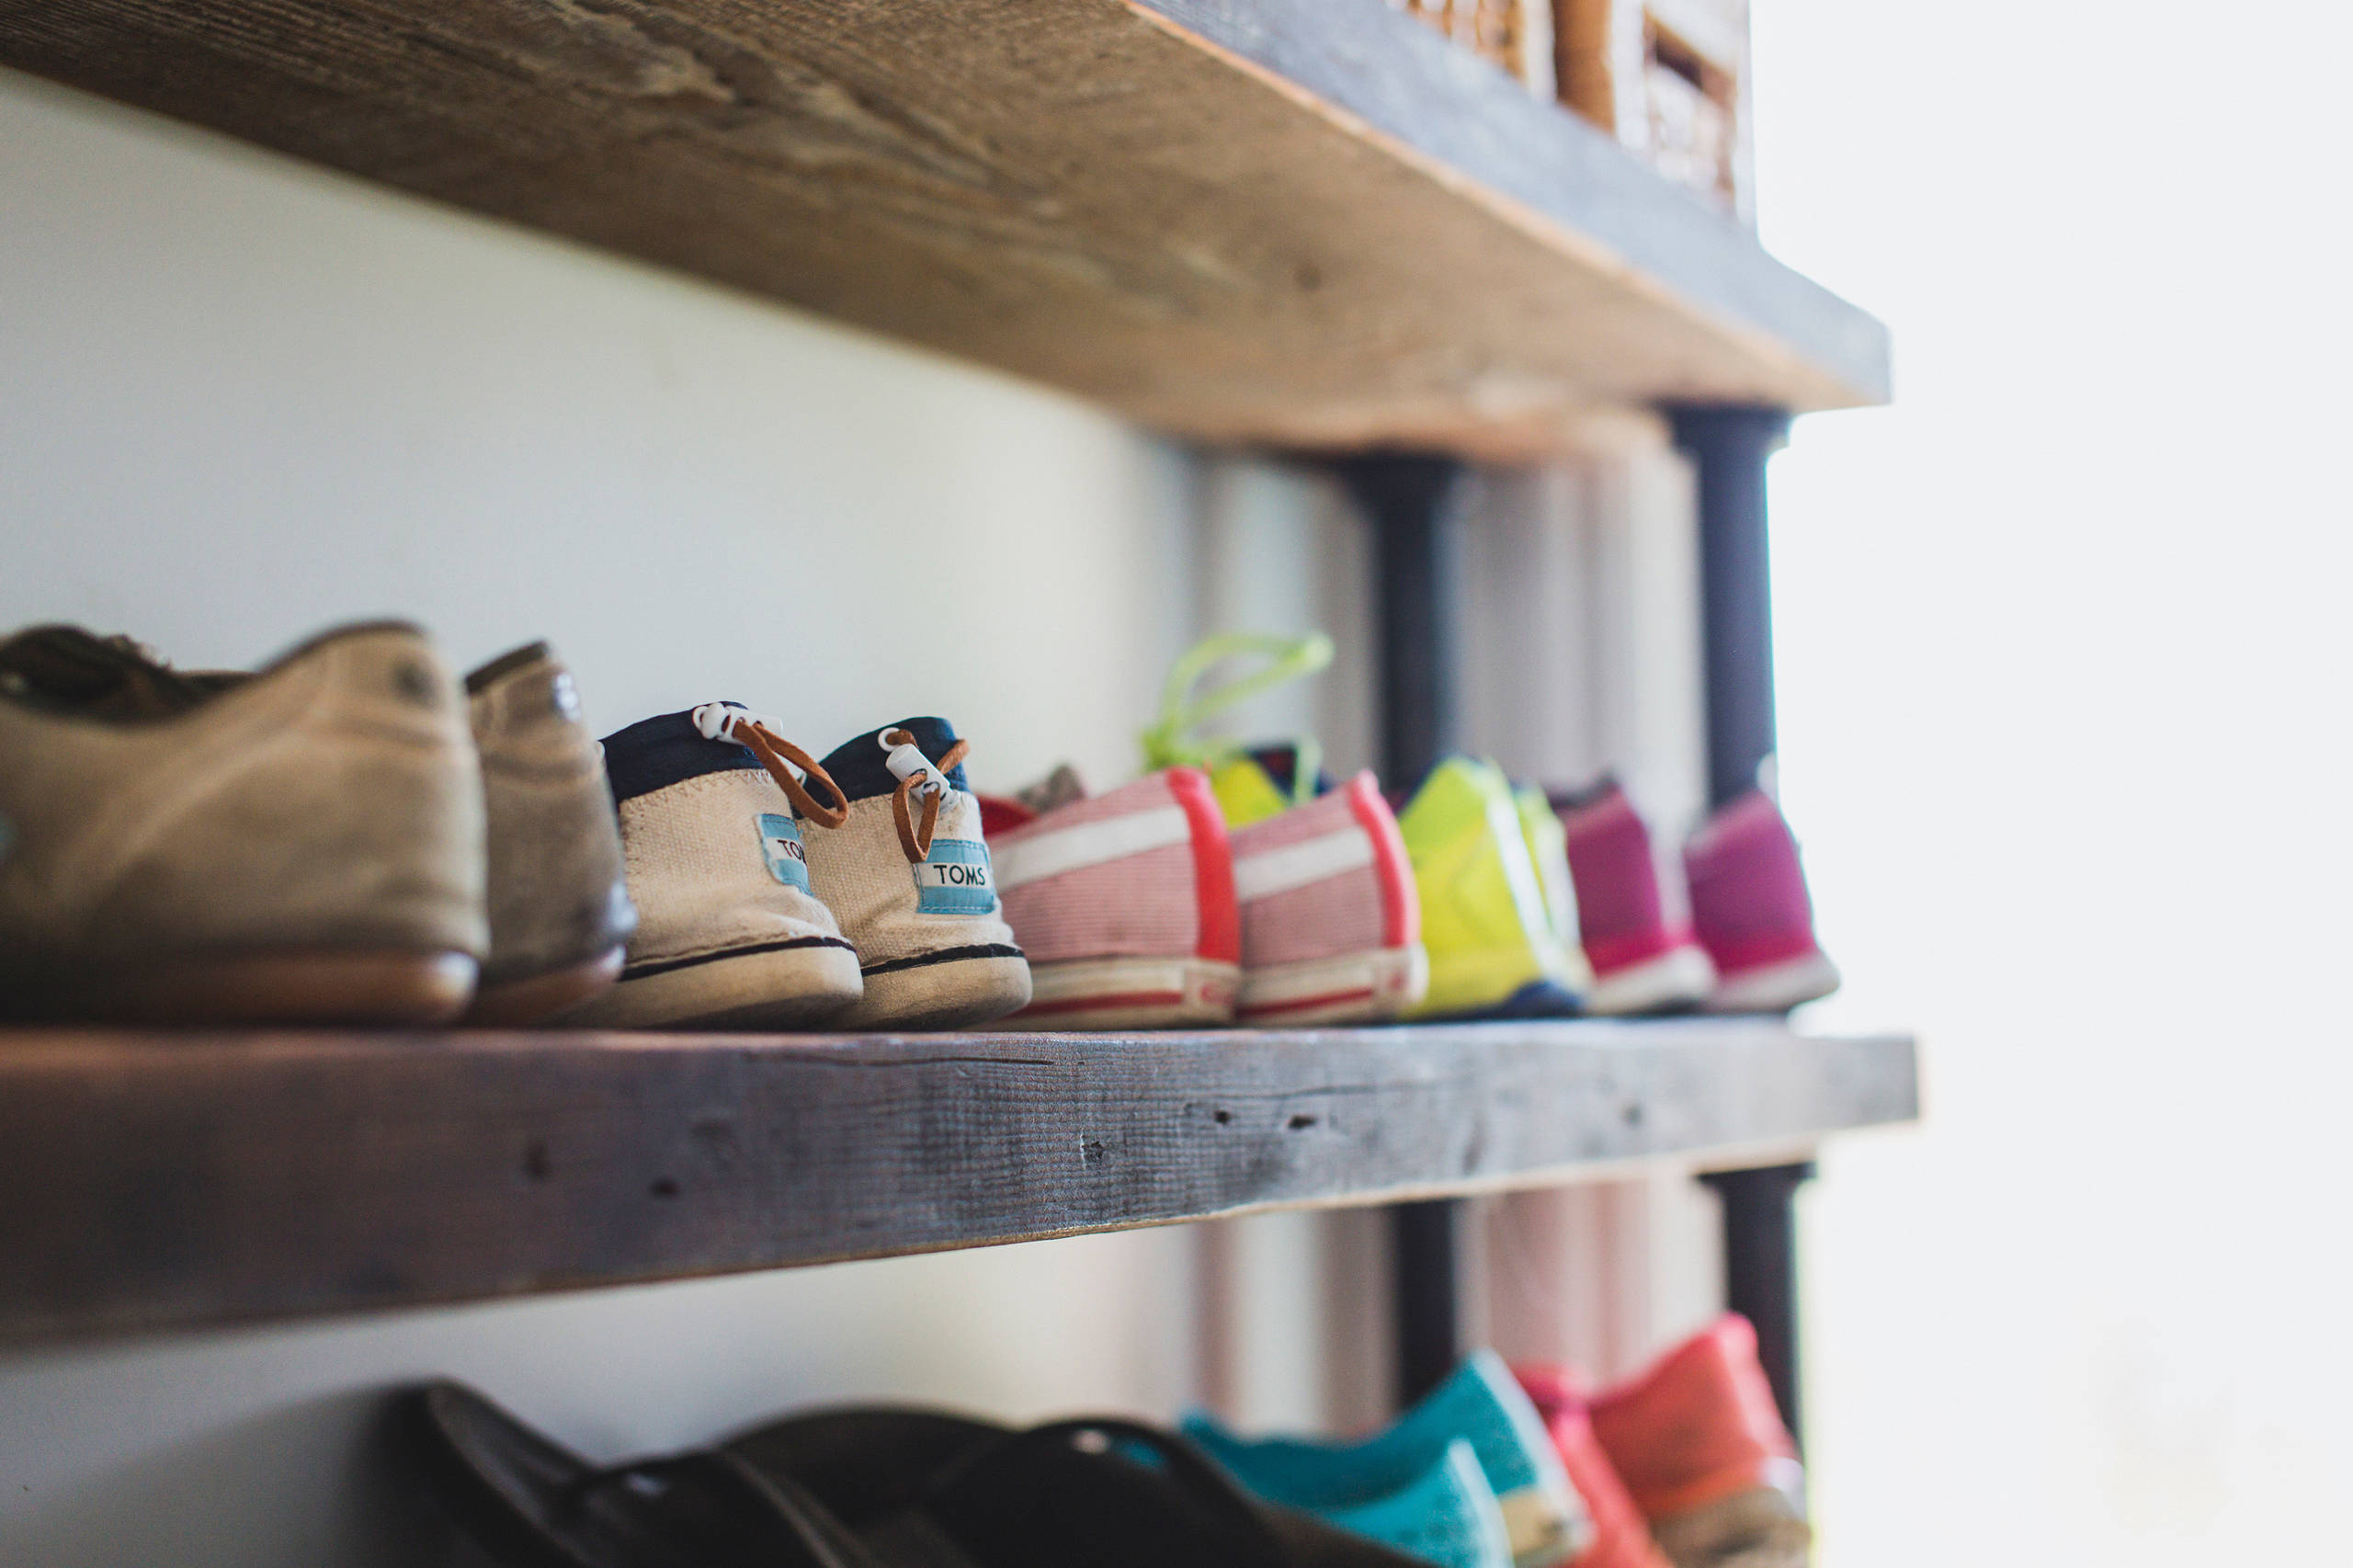 Как сделать полку для обуви: разные варианты изготовления «обувного рая»